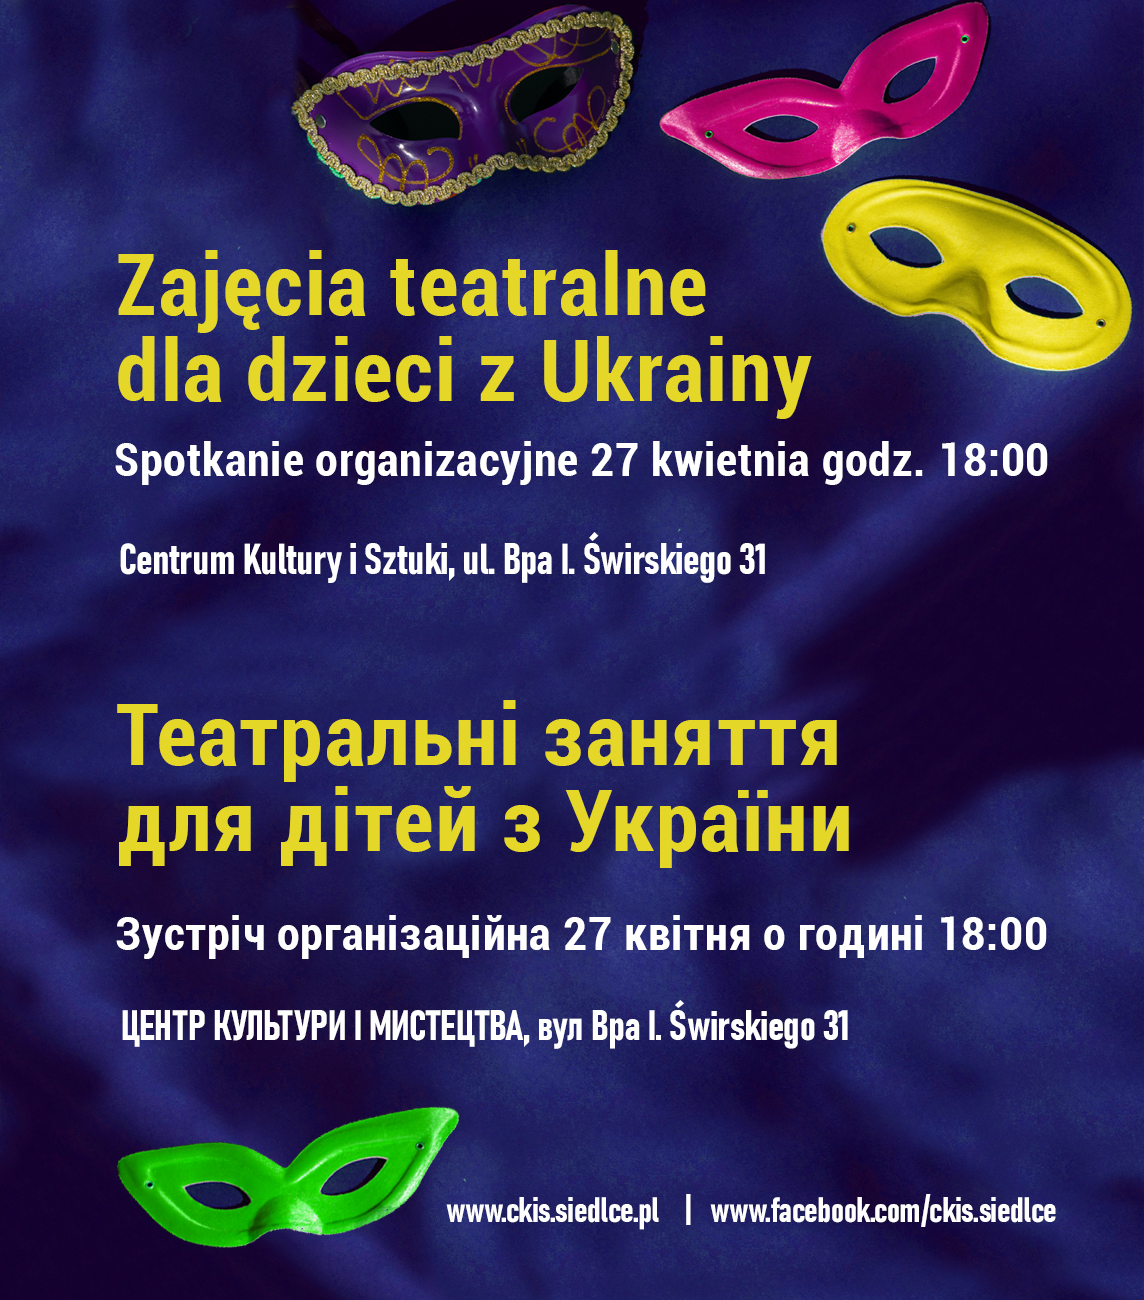 Zajęcia teatralne dla dzieci z Ukrainy - spotkanie organizacyjne 27 kwietnia w CKiS